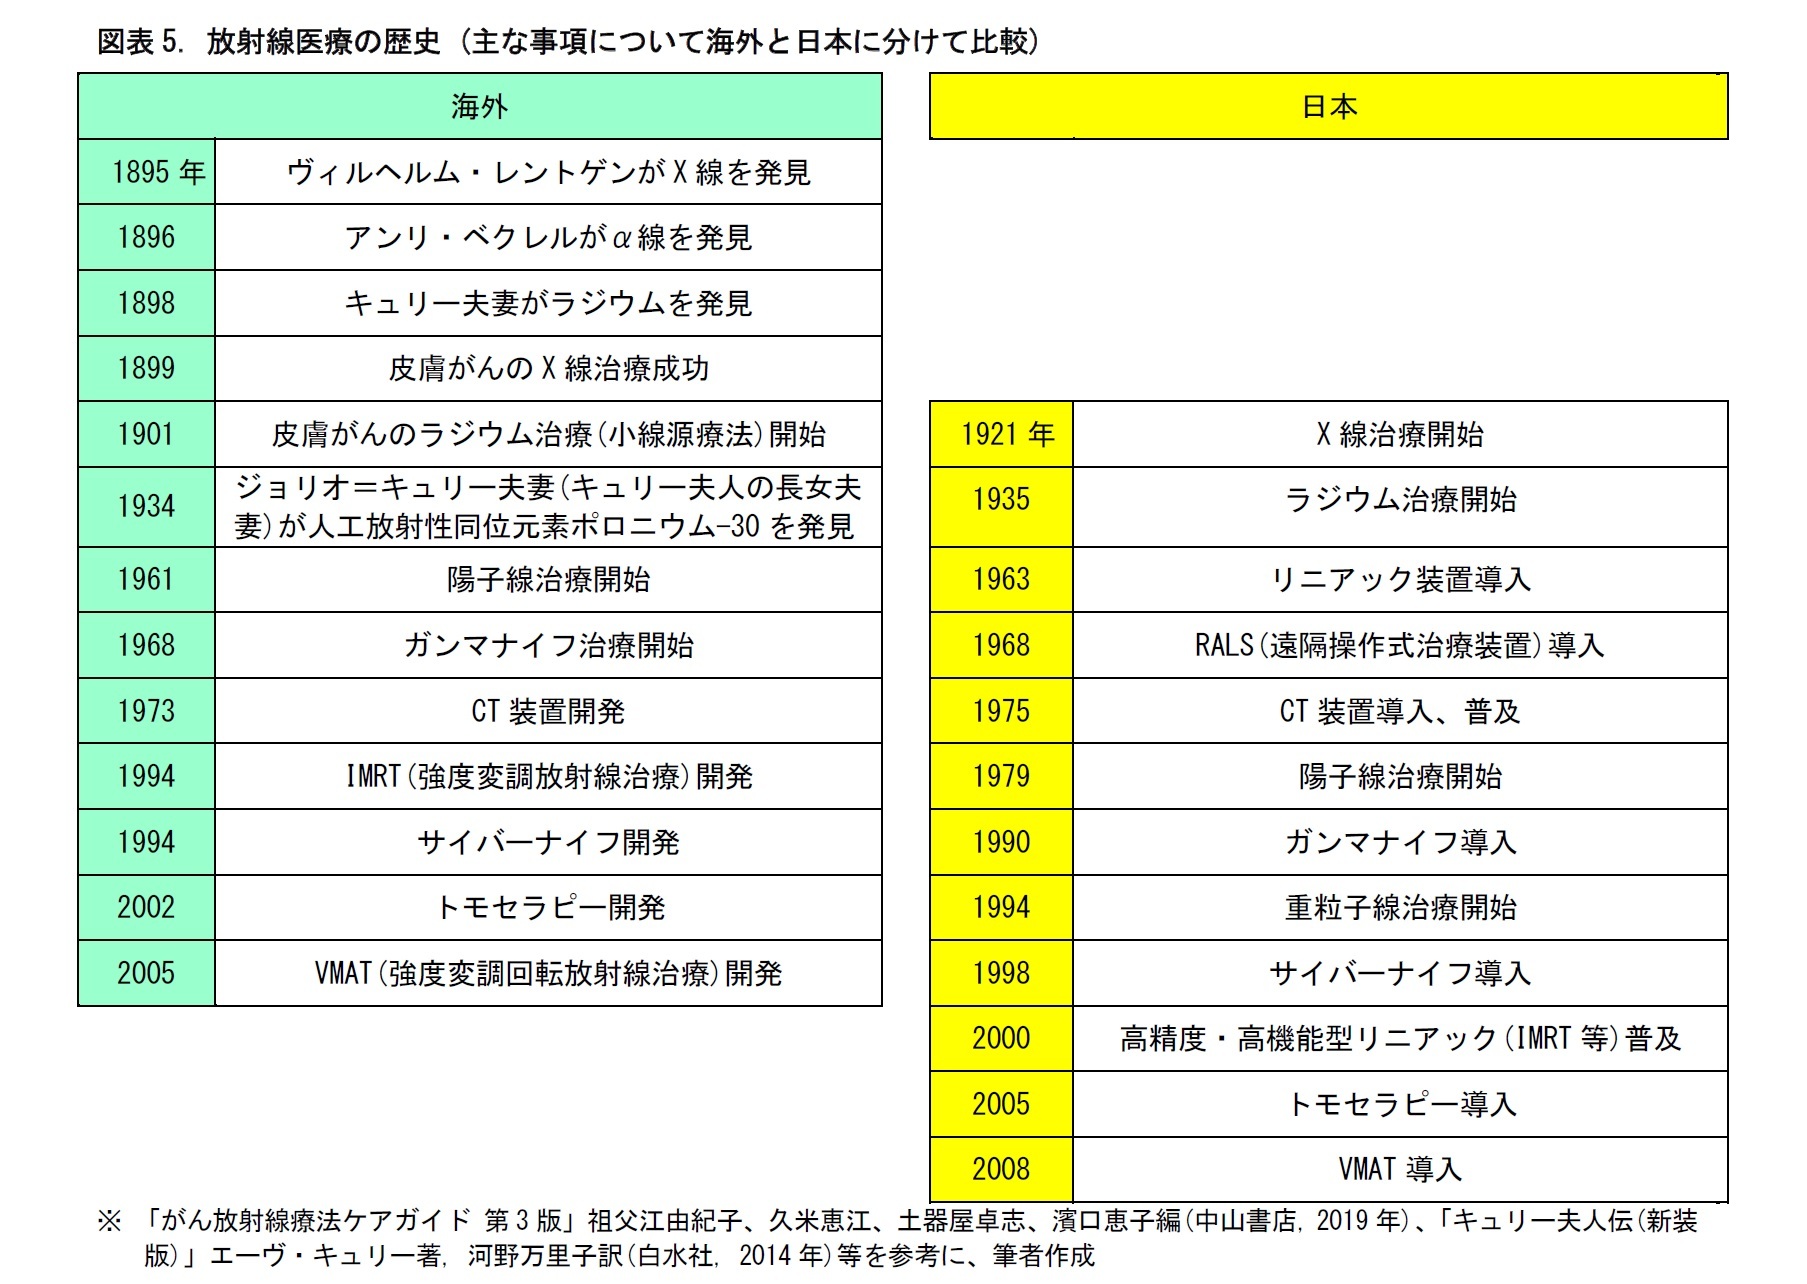 図表5. 放射線医療の歴史 (主な事項について海外と日本に分けて比較)